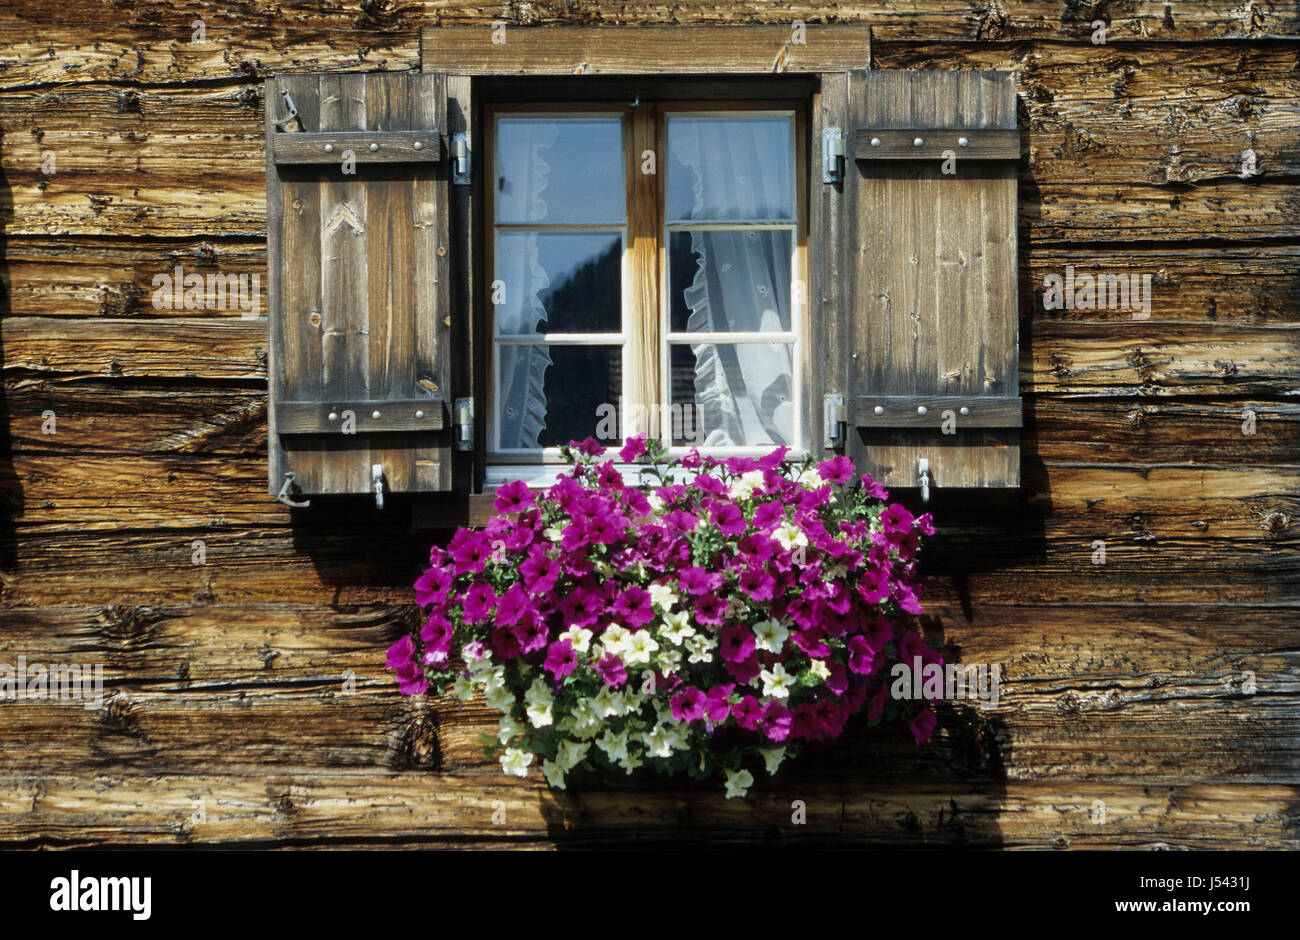 La construction fenêtre lucarne bucolique hublot volet bois fleurs Banque D'Images